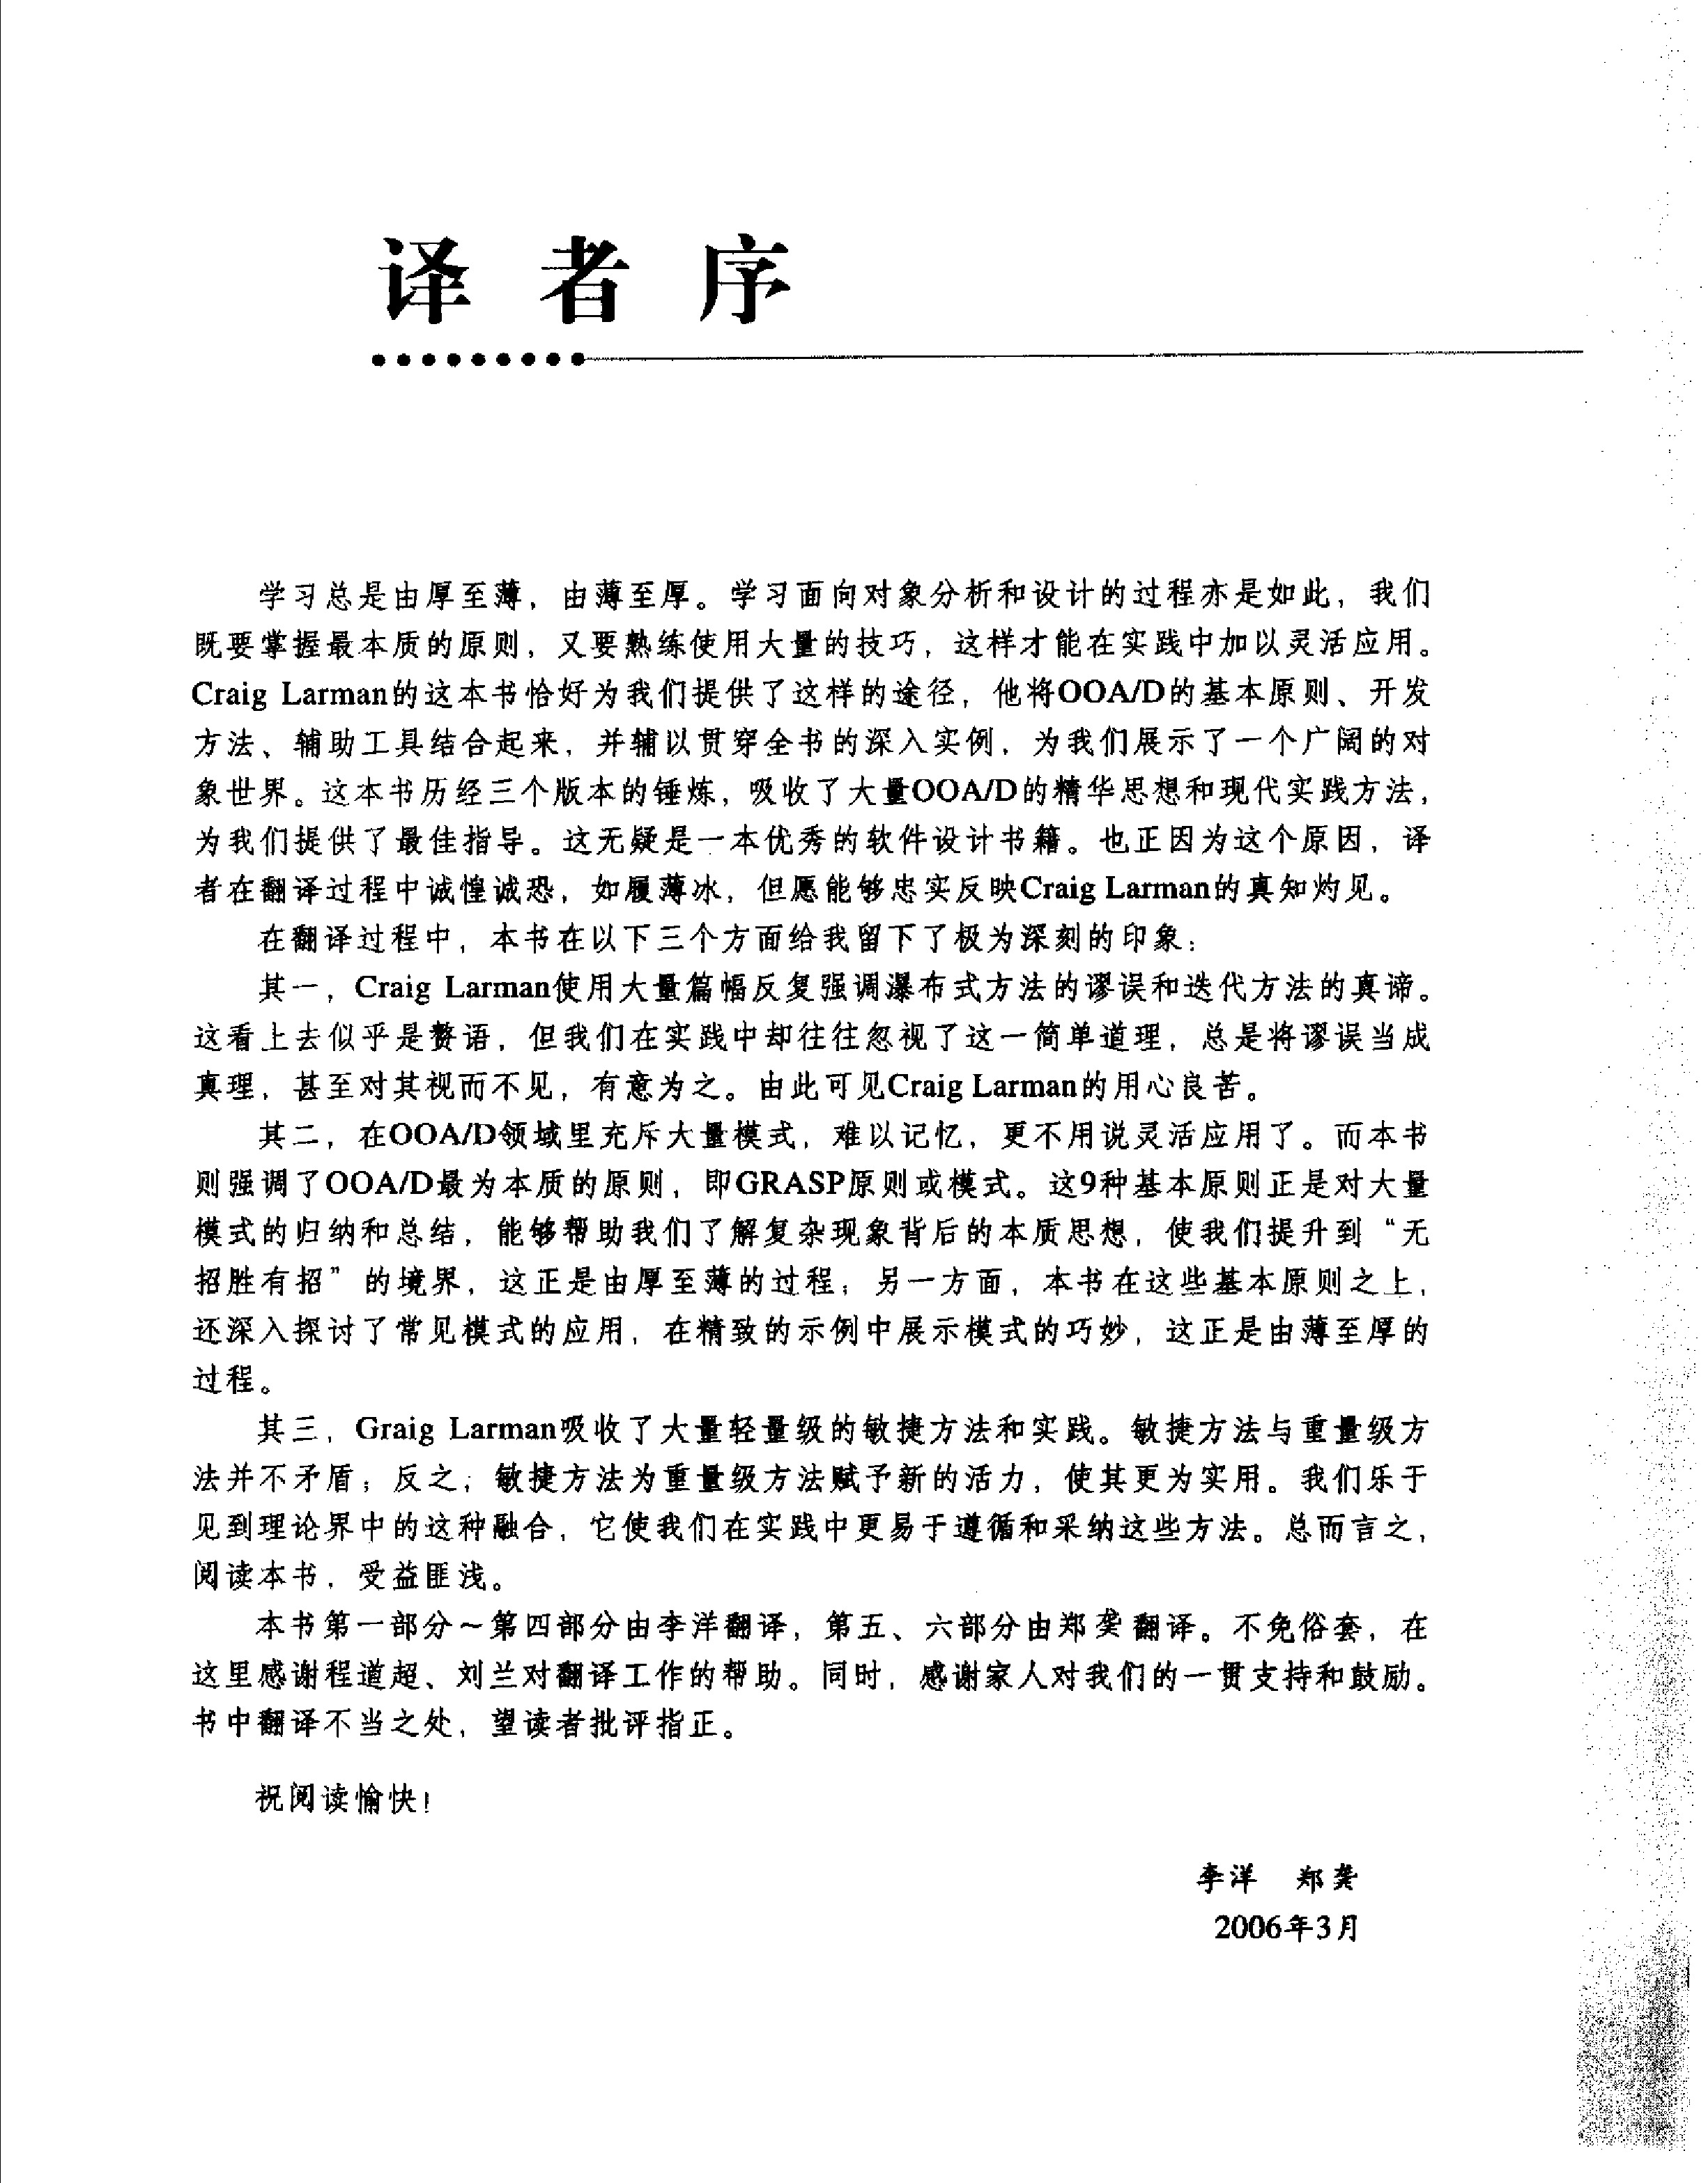 UML和模式应用-中文第三版